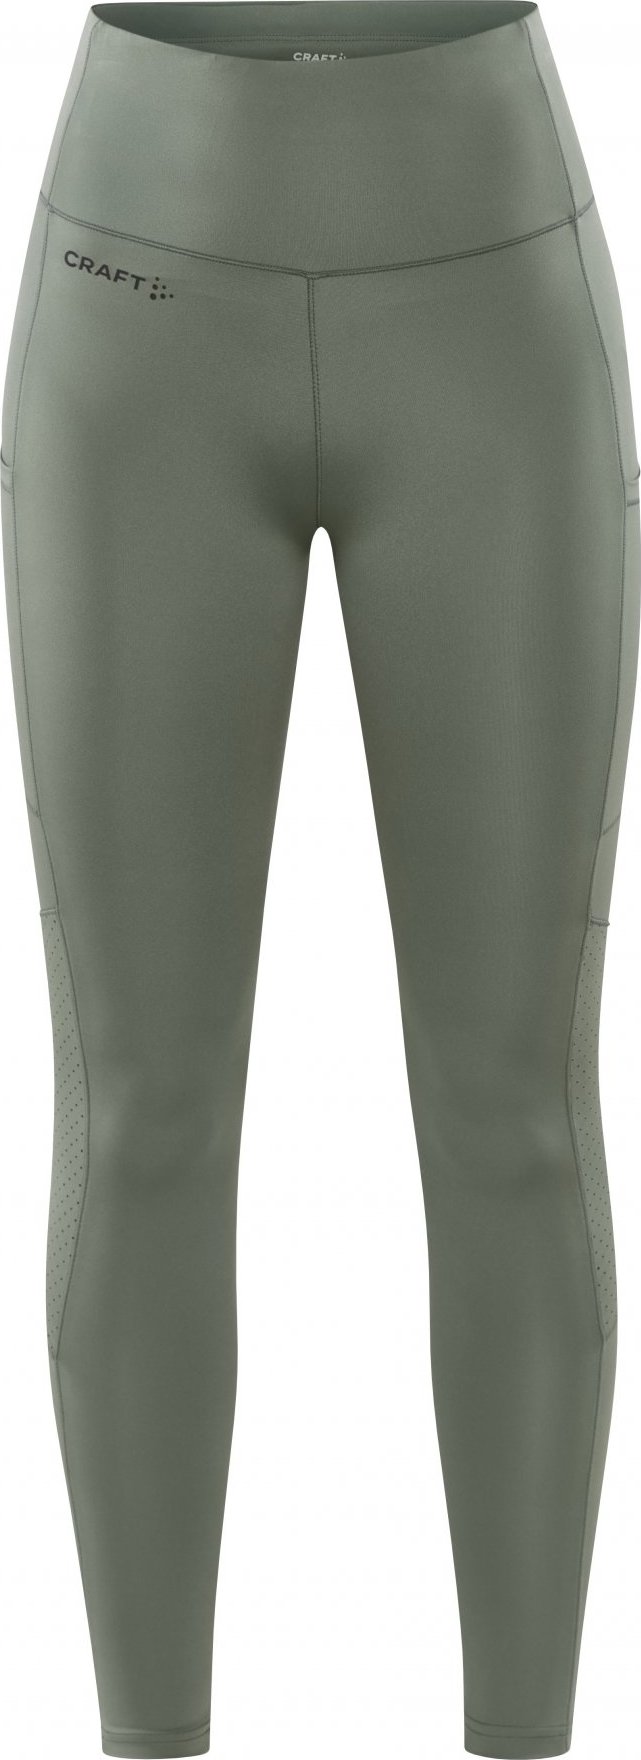 Dámské elastické kalhoty CRAFT Adv Essence 2 zelené Velikost: L